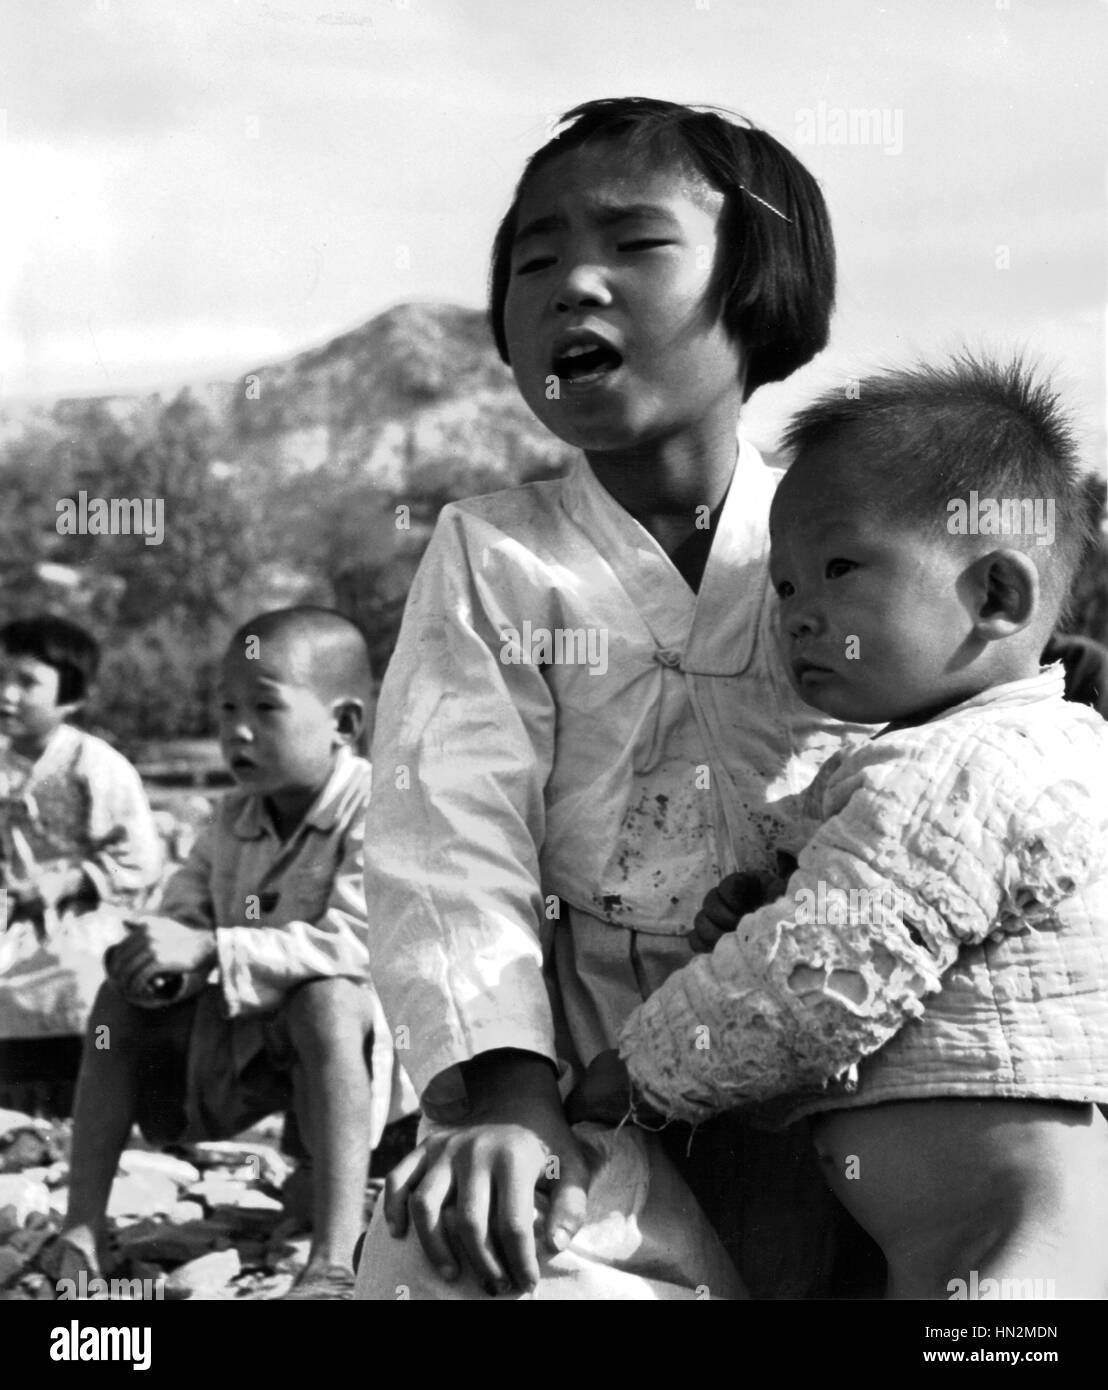 Guerra di Corea, giovani schoolgirl da Evur Pyung village, dove la scuola è stata completamente rasa al suolo durante la guerra. 1950 guerra coreana archivi nazionali - Washington Foto Stock